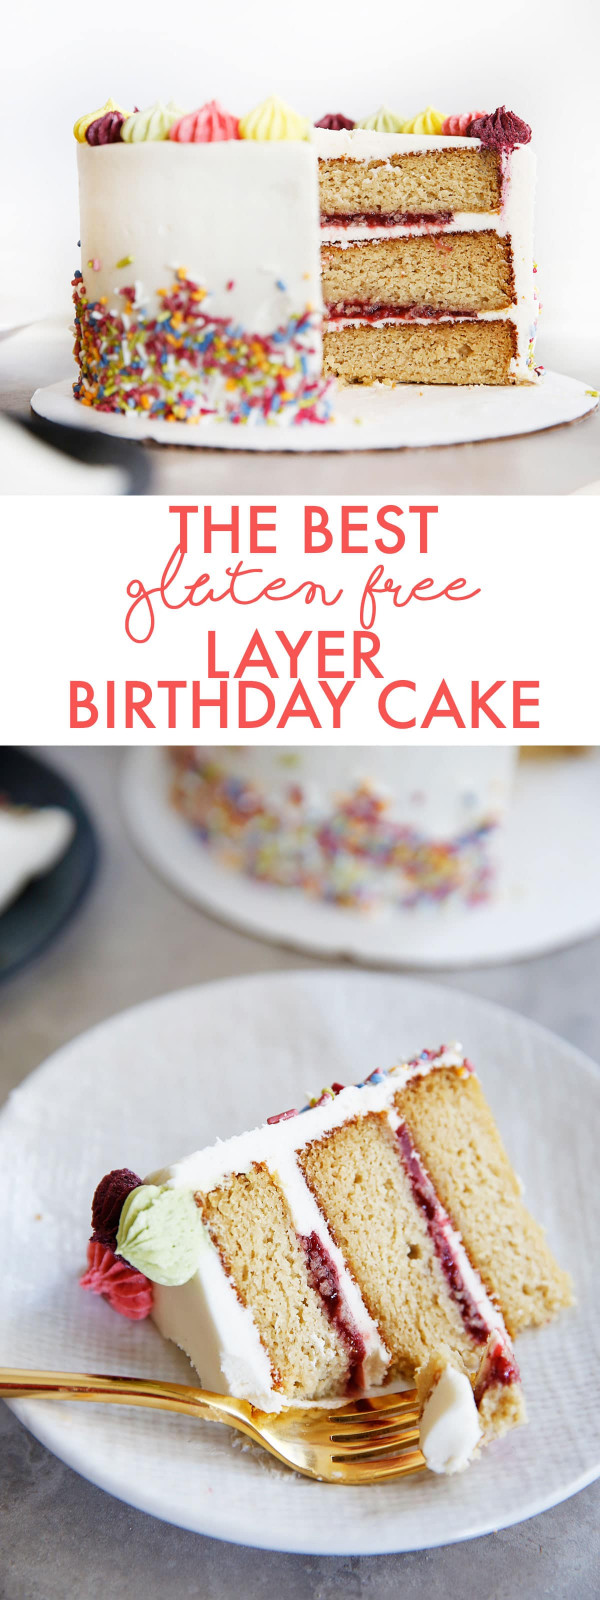 Gluten Free Birthday Cake
 The BEST Gluten Free Layer Birthday Cake Lexi s Clean